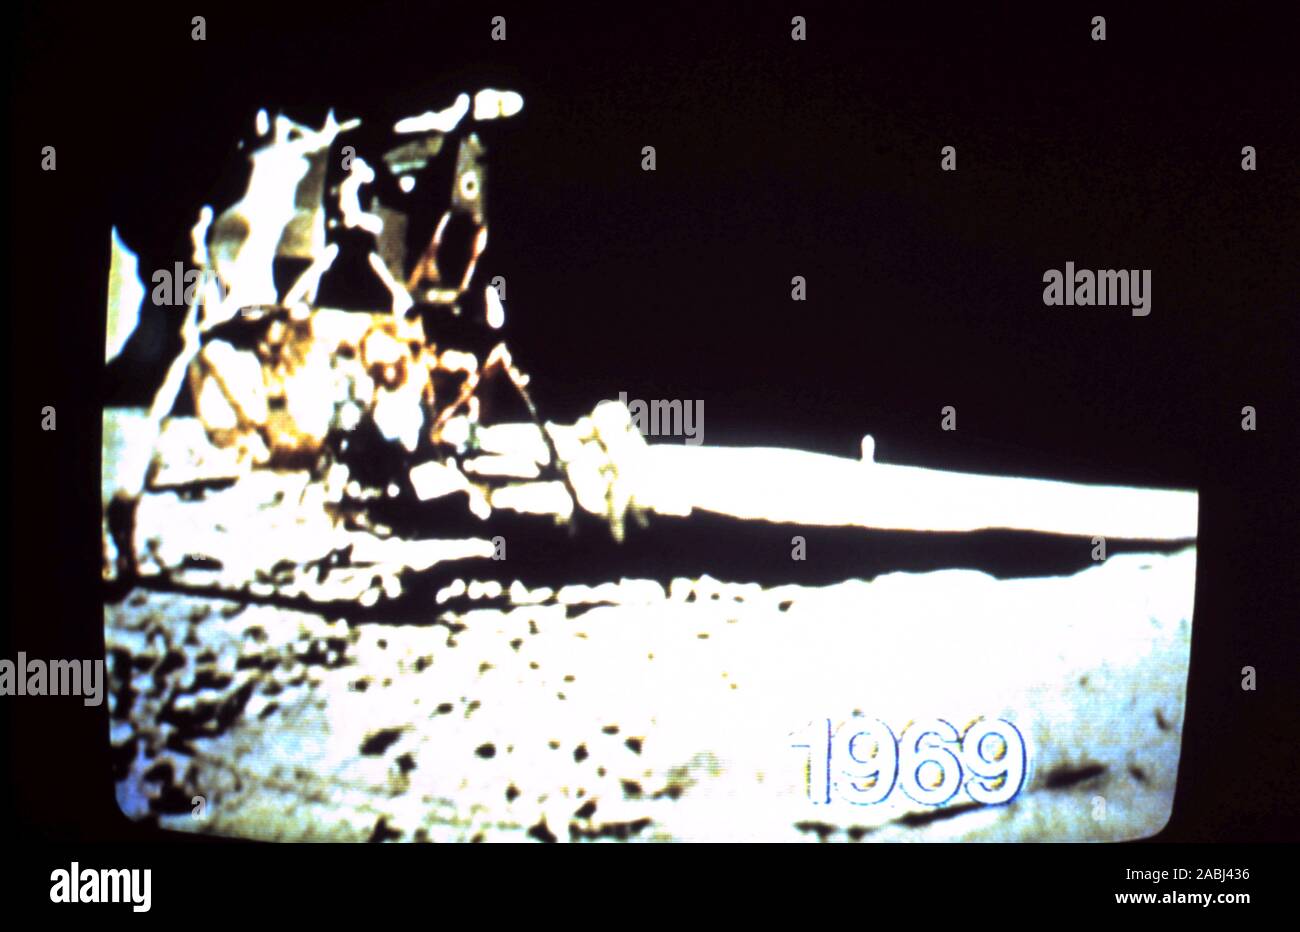 Teleclip - Apollo 11 Buzz Aldrin de descendre sur la surface de la lune le deuxième homme sur la lune - tourné par Neil Armstrong - photo prise directement sur écran de télévision circa 1969/72 Banque D'Images